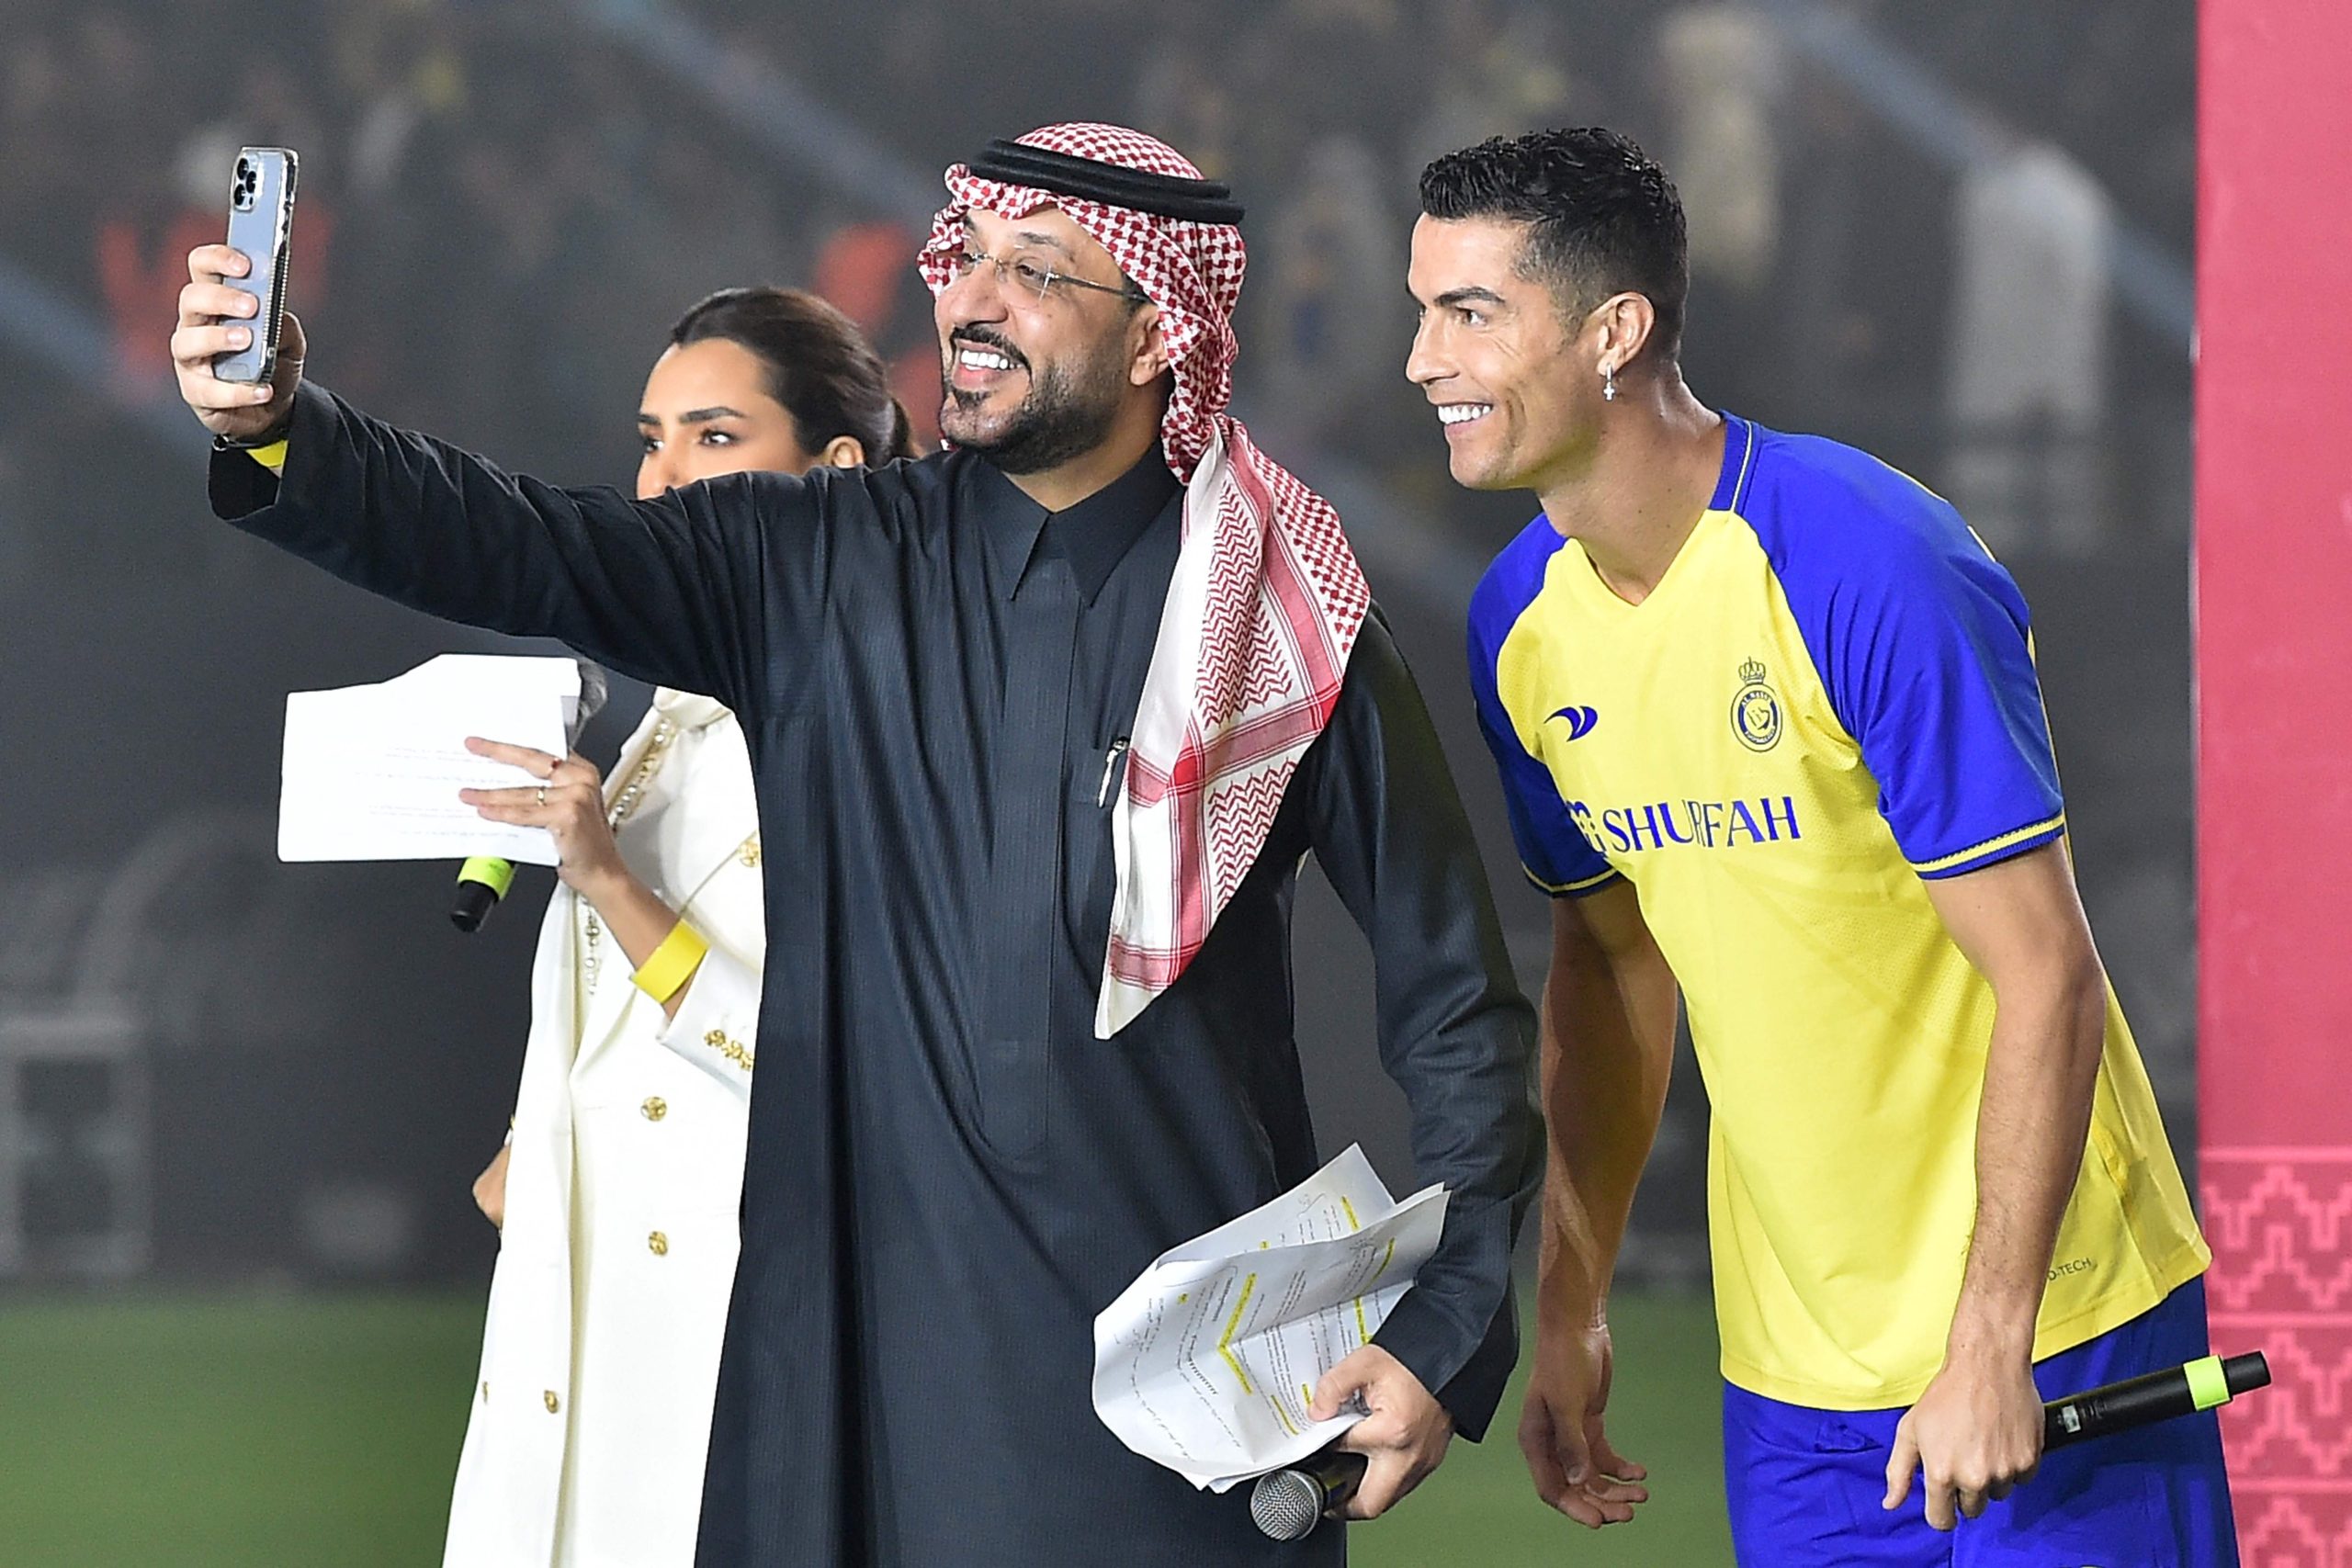 Ronaldo vai receber 200 milhões de euros para promover candidatura saudita ao Mundial2030